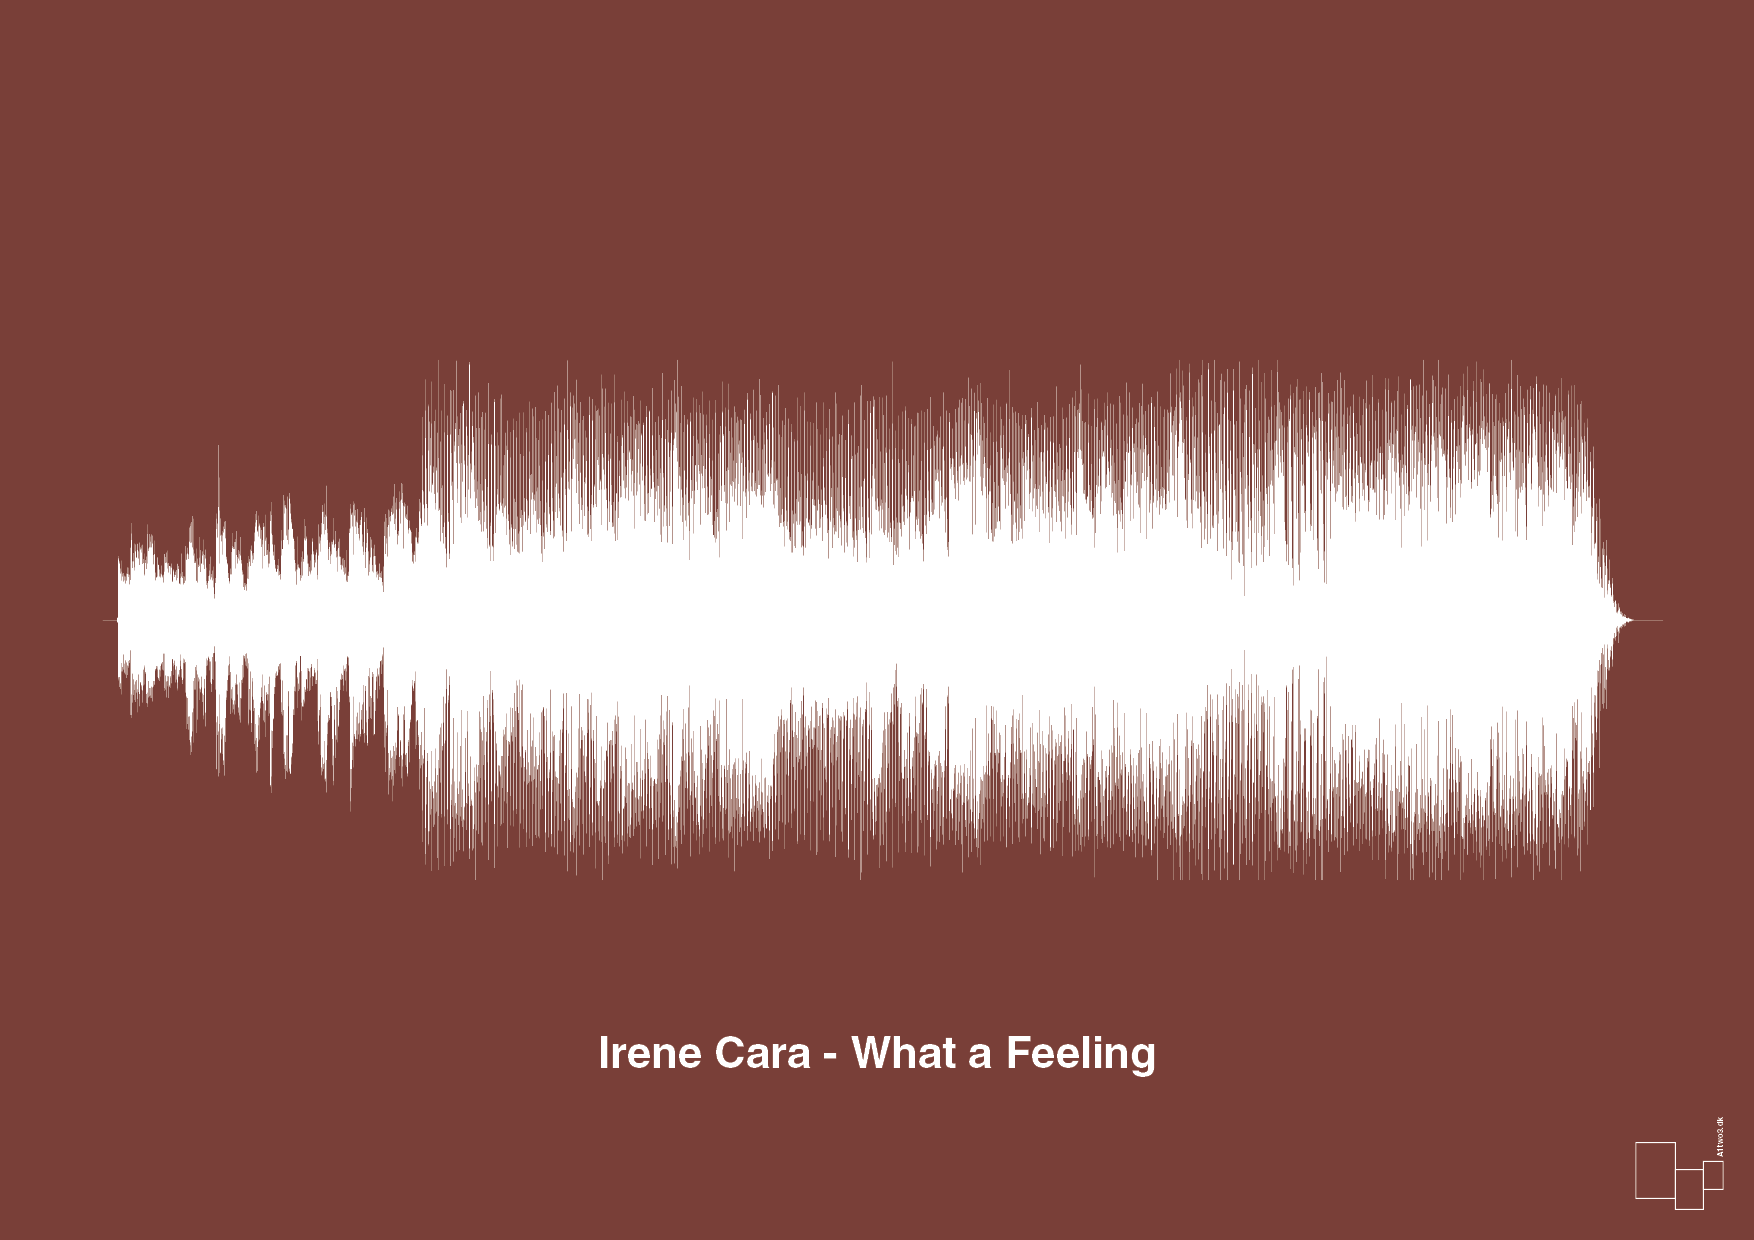 irene cara - what a feeling - Plakat med Musik i Red Pepper